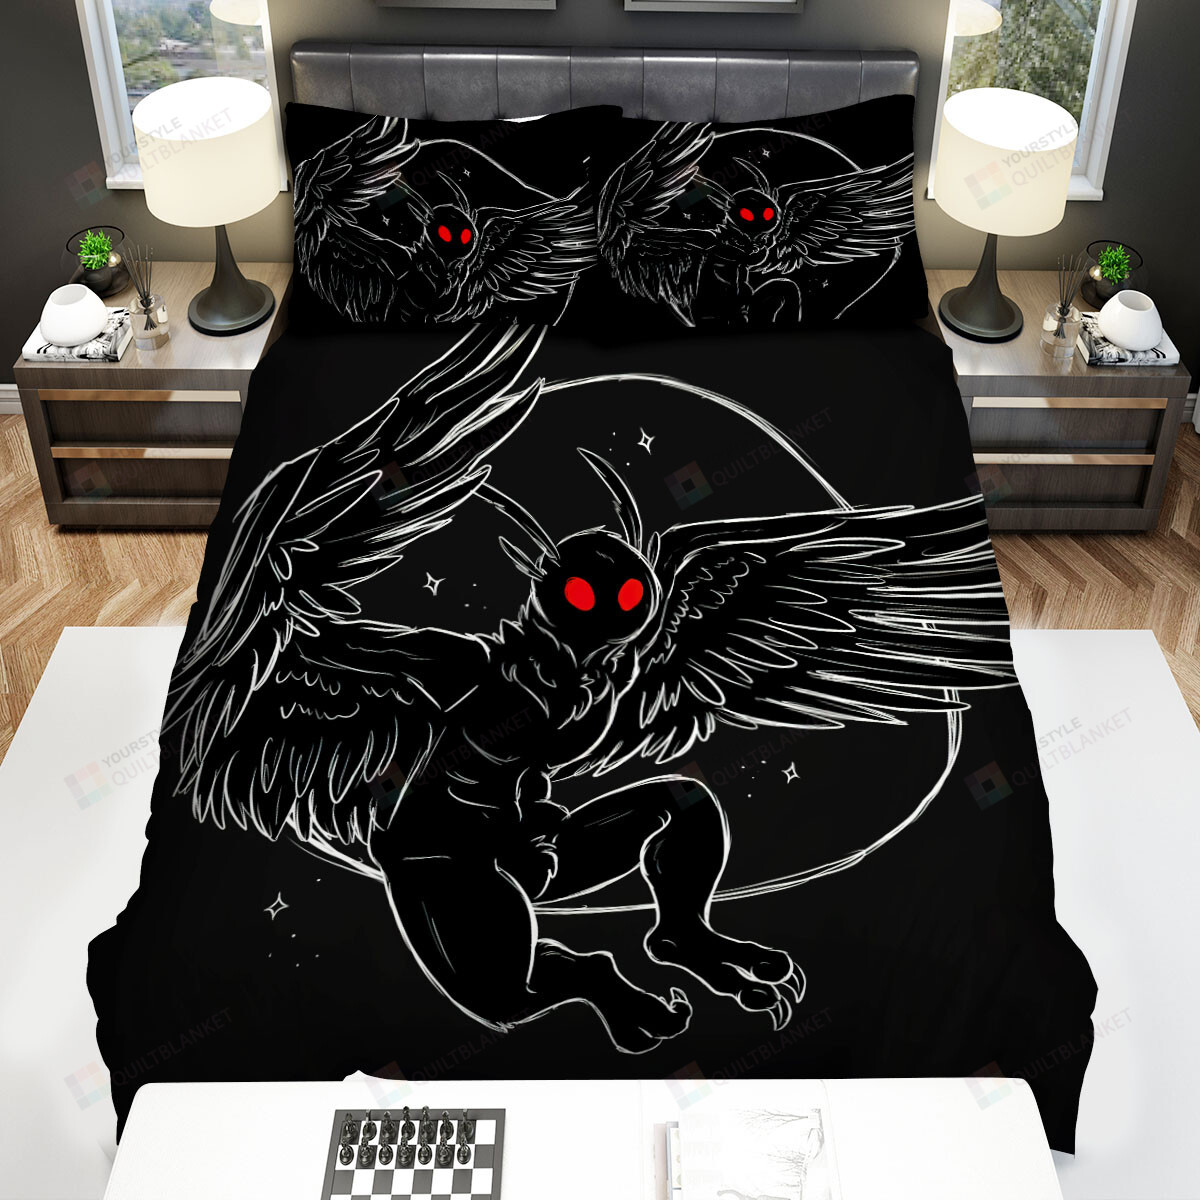 Mothman Black & White Illustration Bed Sheets Spread Duvet Cover Bedding Sets